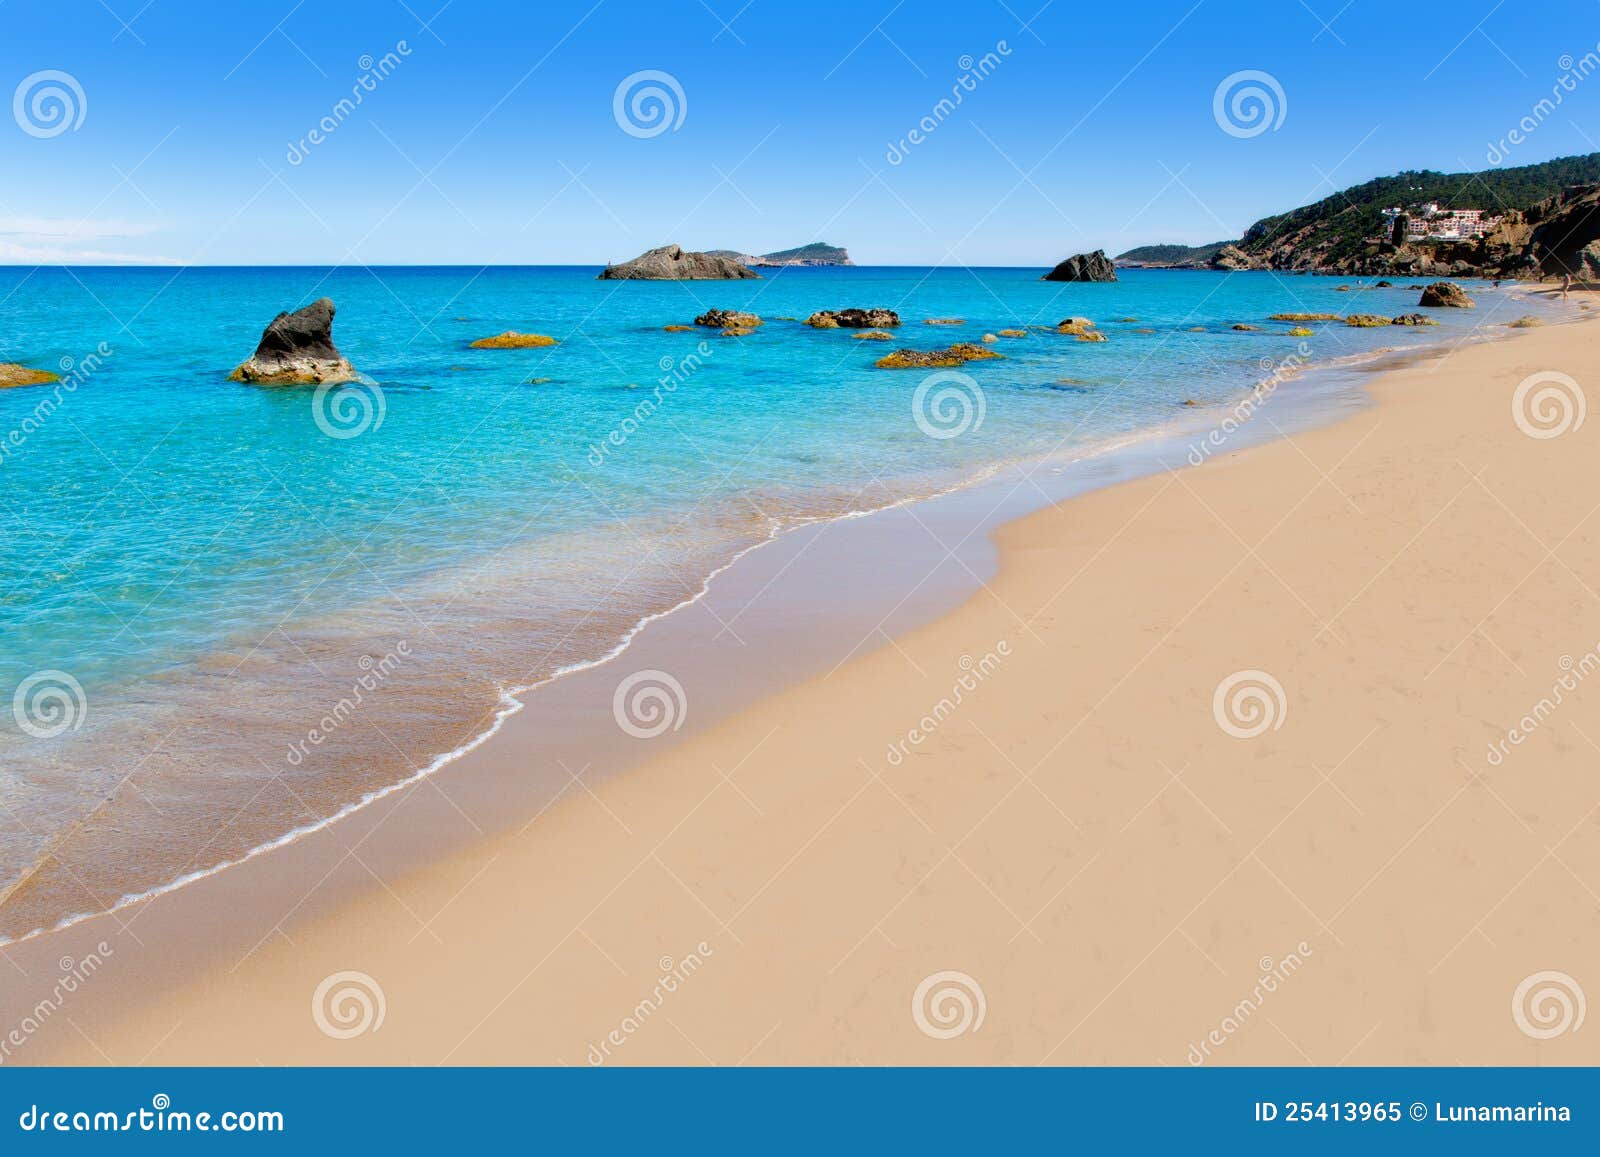 aiguas blanques agua blanca ibiza beach